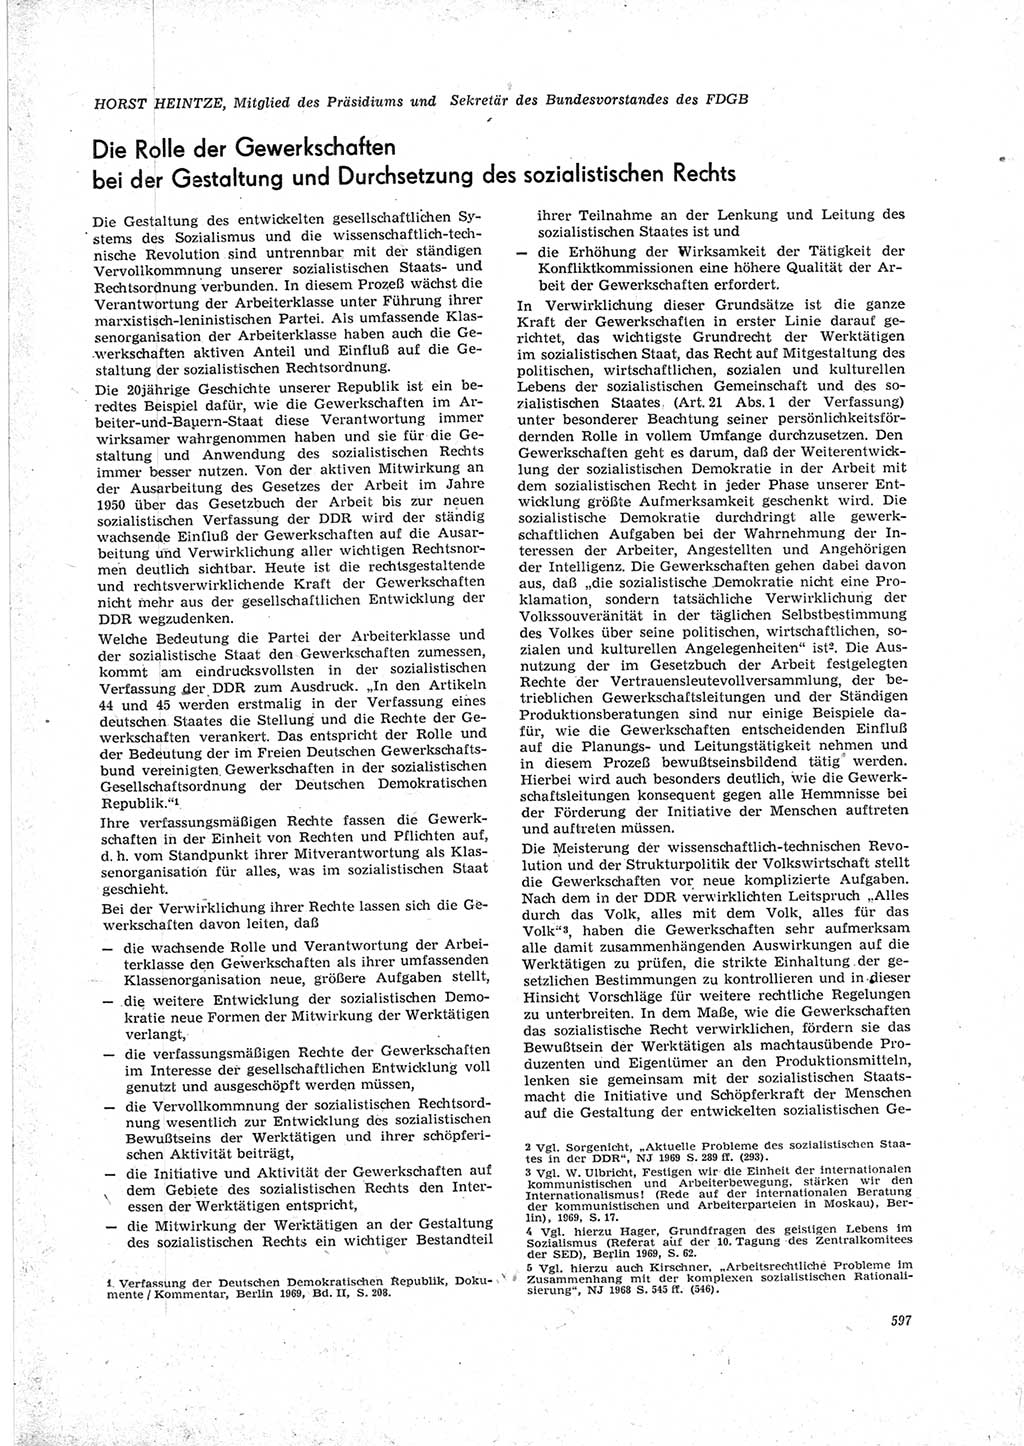 Neue Justiz (NJ), Zeitschrift für Recht und Rechtswissenschaft [Deutsche Demokratische Republik (DDR)], 23. Jahrgang 1969, Seite 597 (NJ DDR 1969, S. 597)